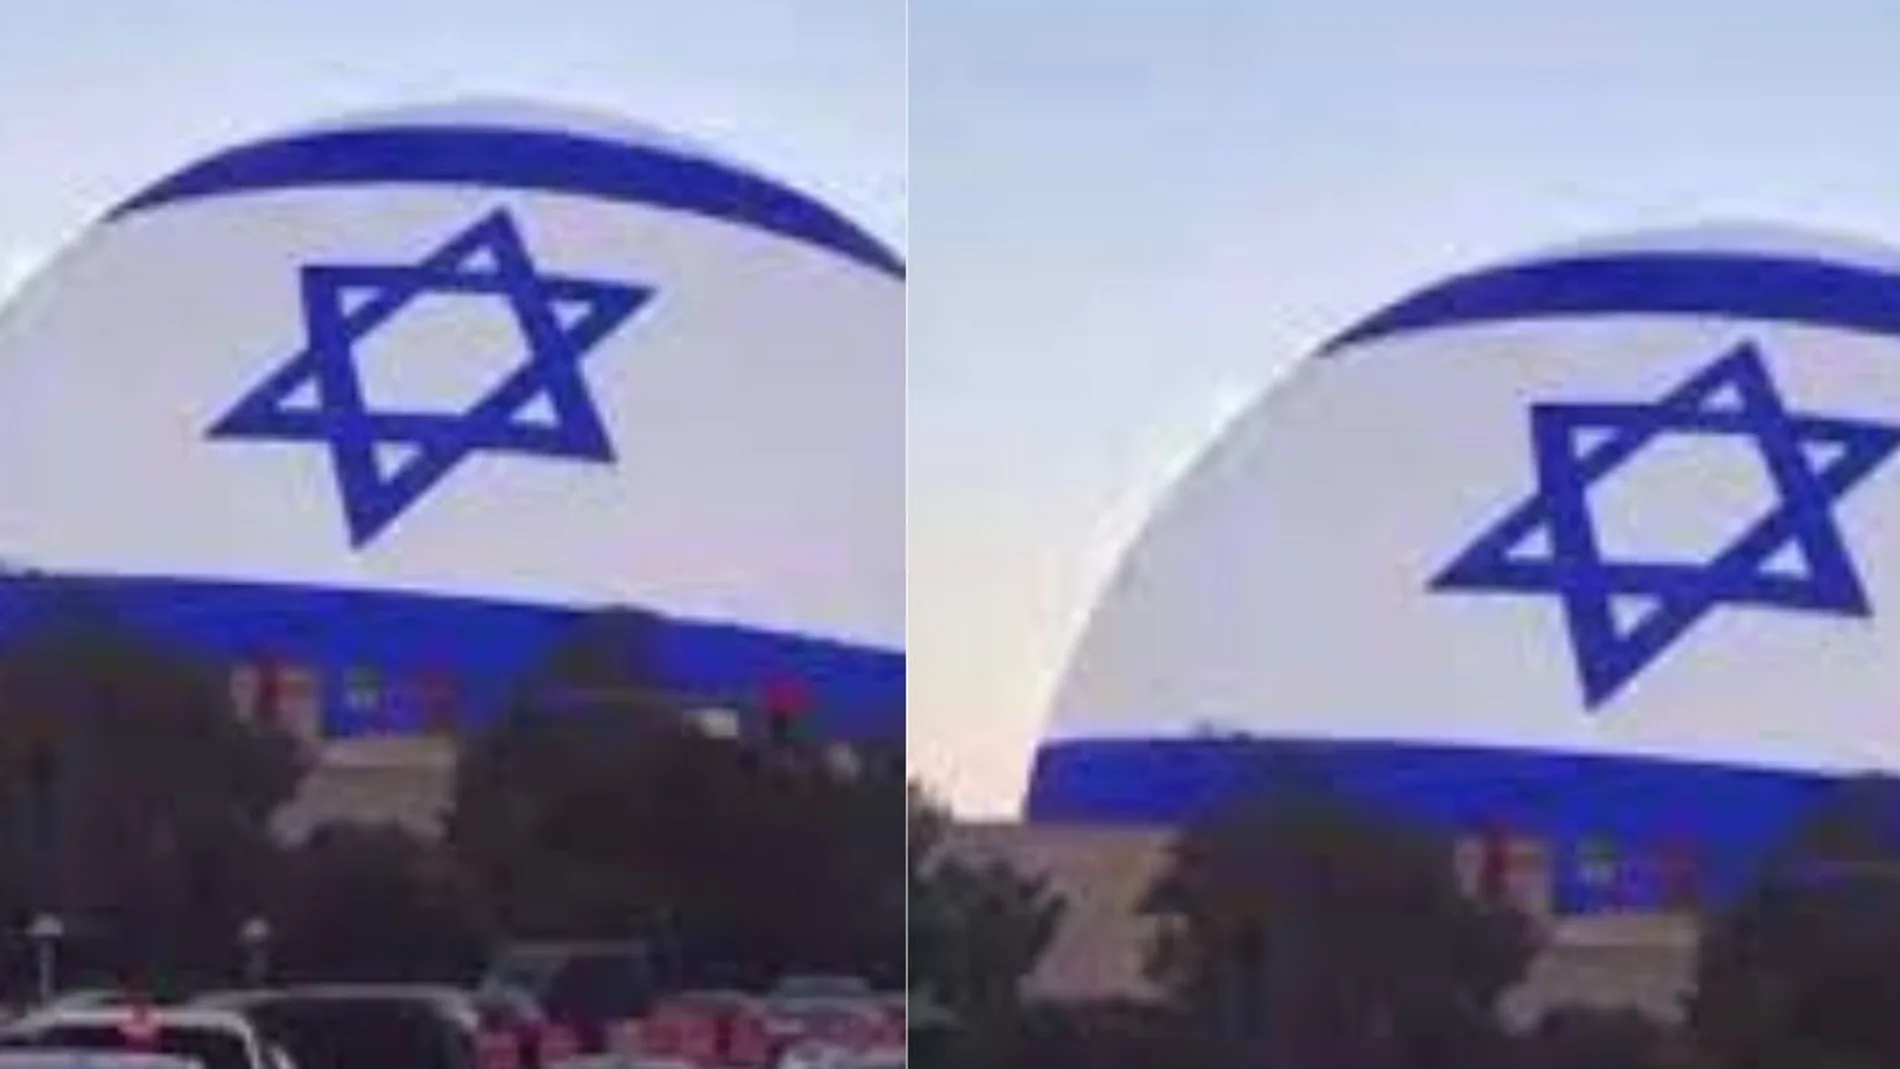 El nuevo auditorio "The Sphere" de Las Vegas ya luce la bandera de Israel